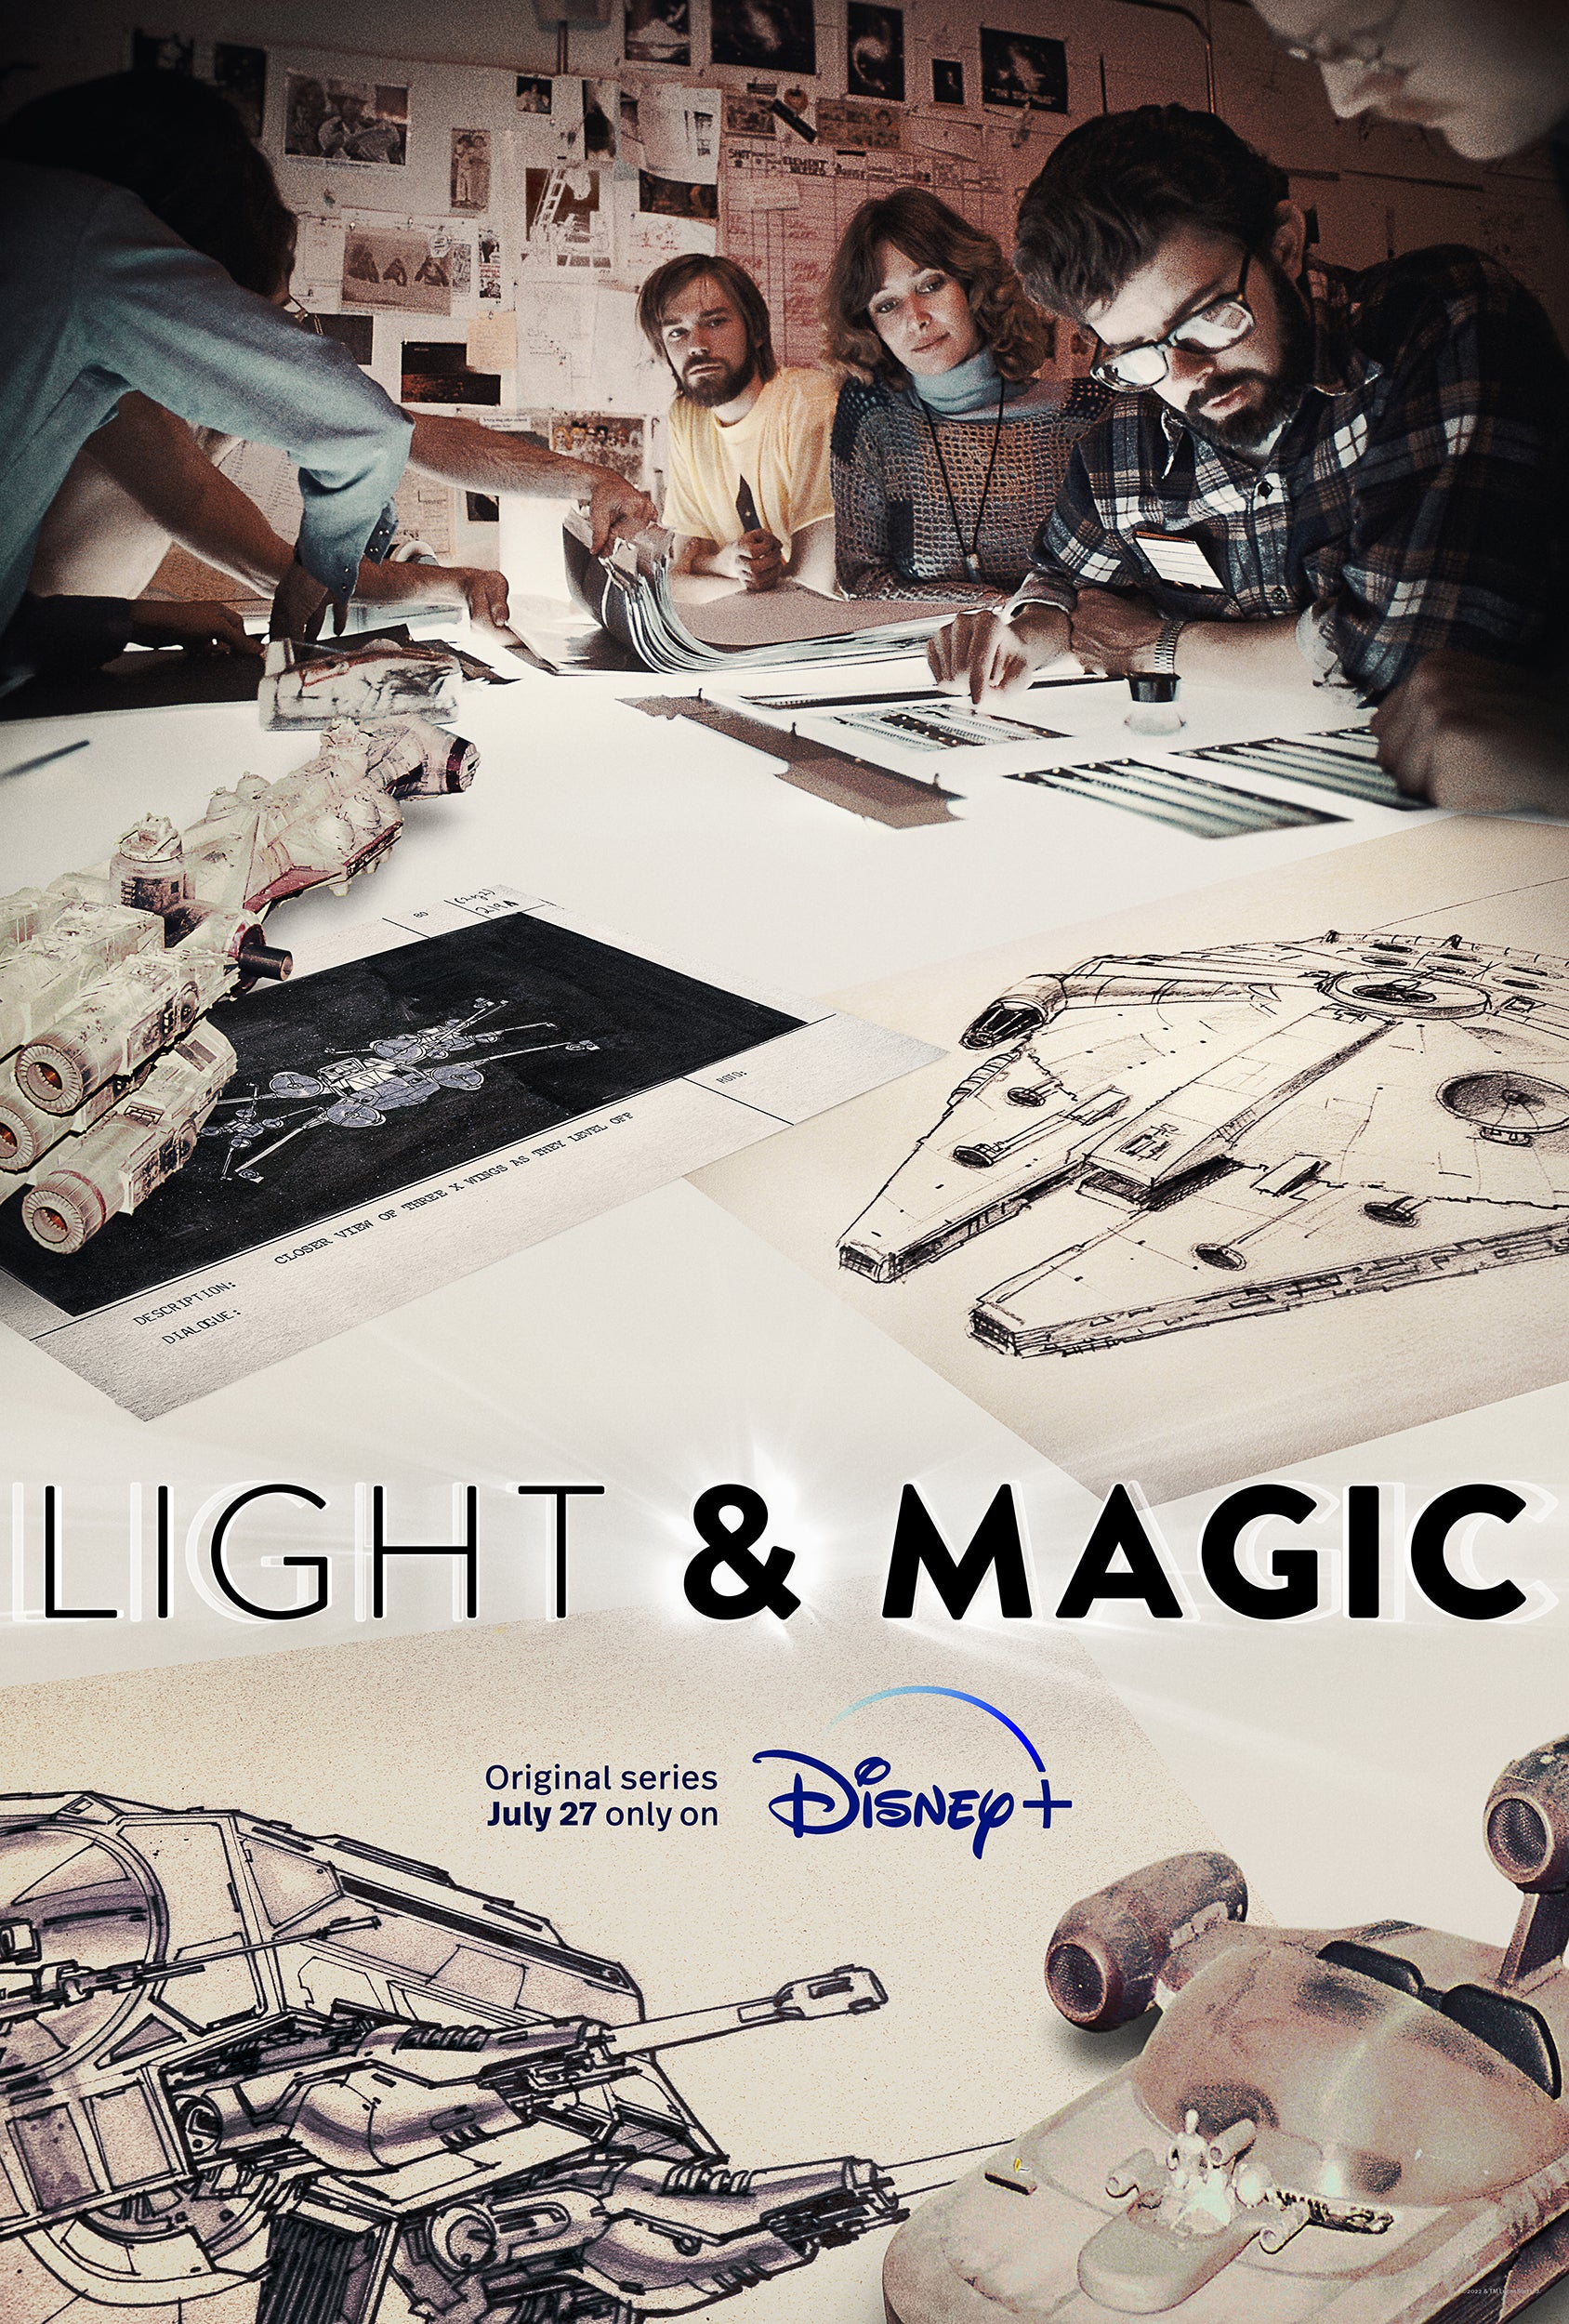 TV ratings for Light & Magic in Alemania. Disney+ TV series